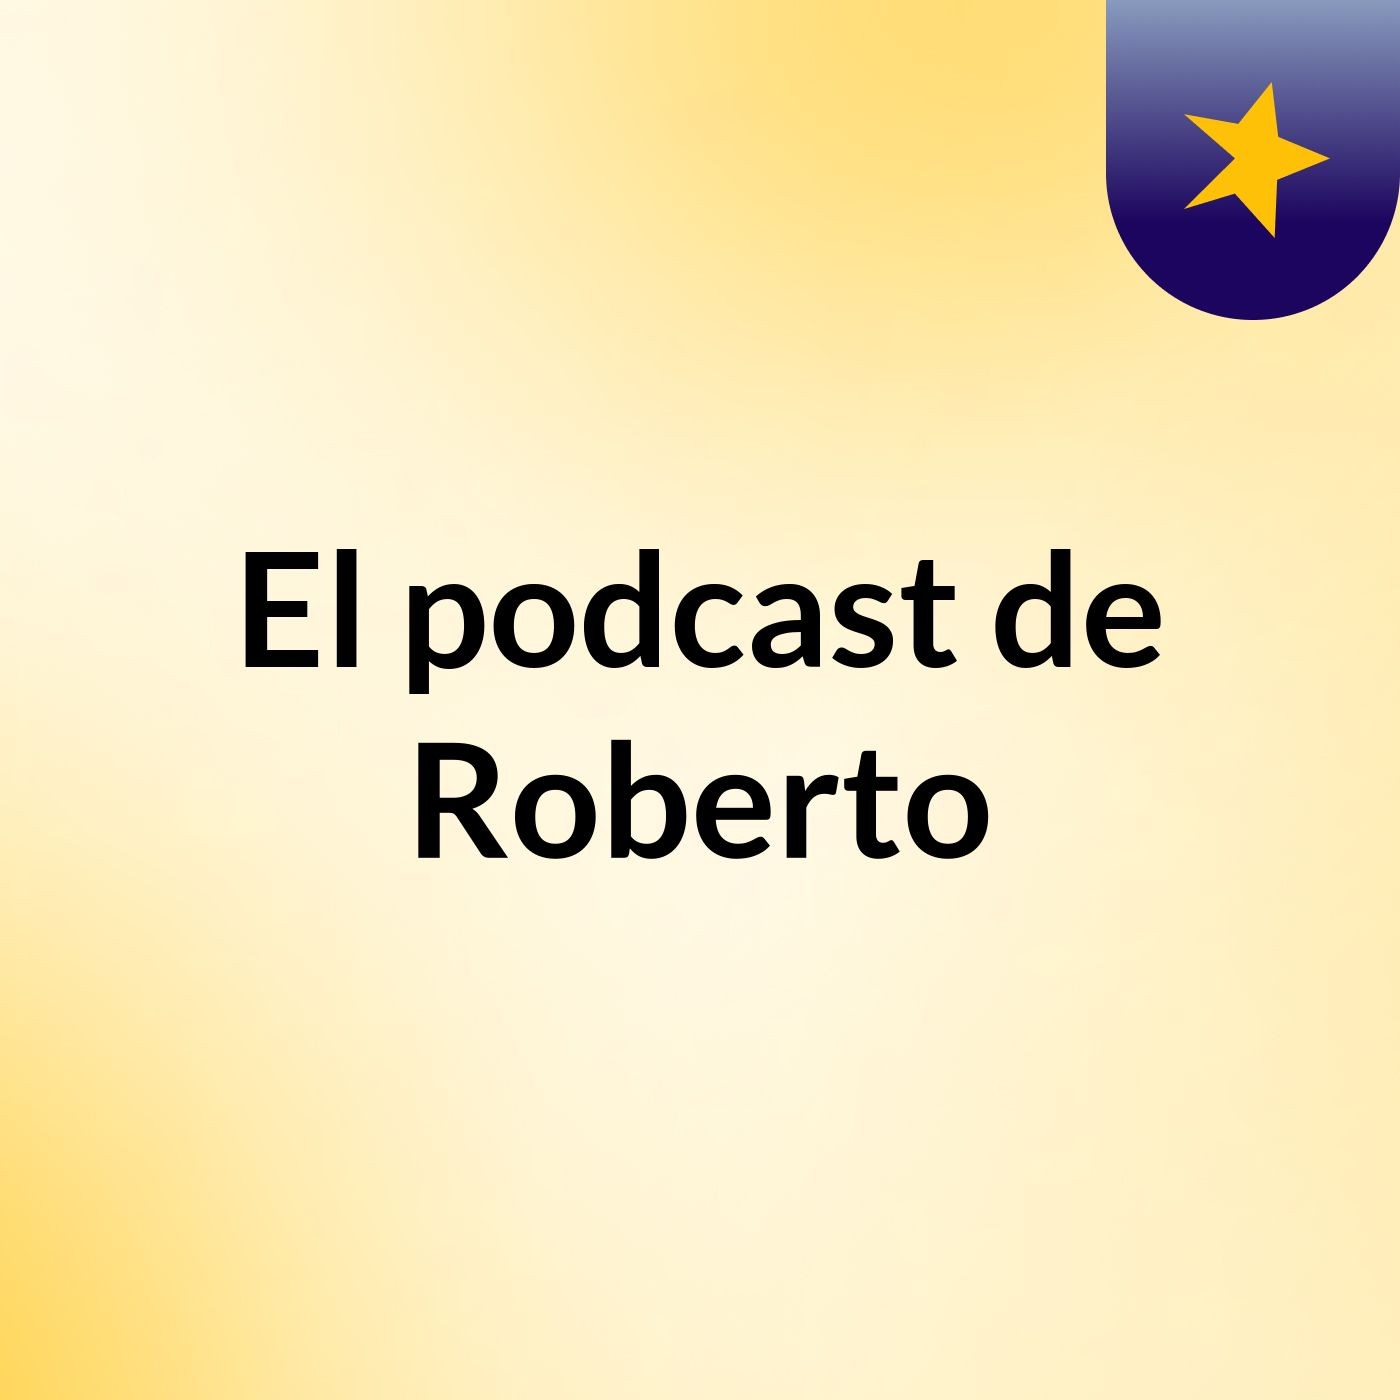 Episodio 3 - El podcast de Roberto